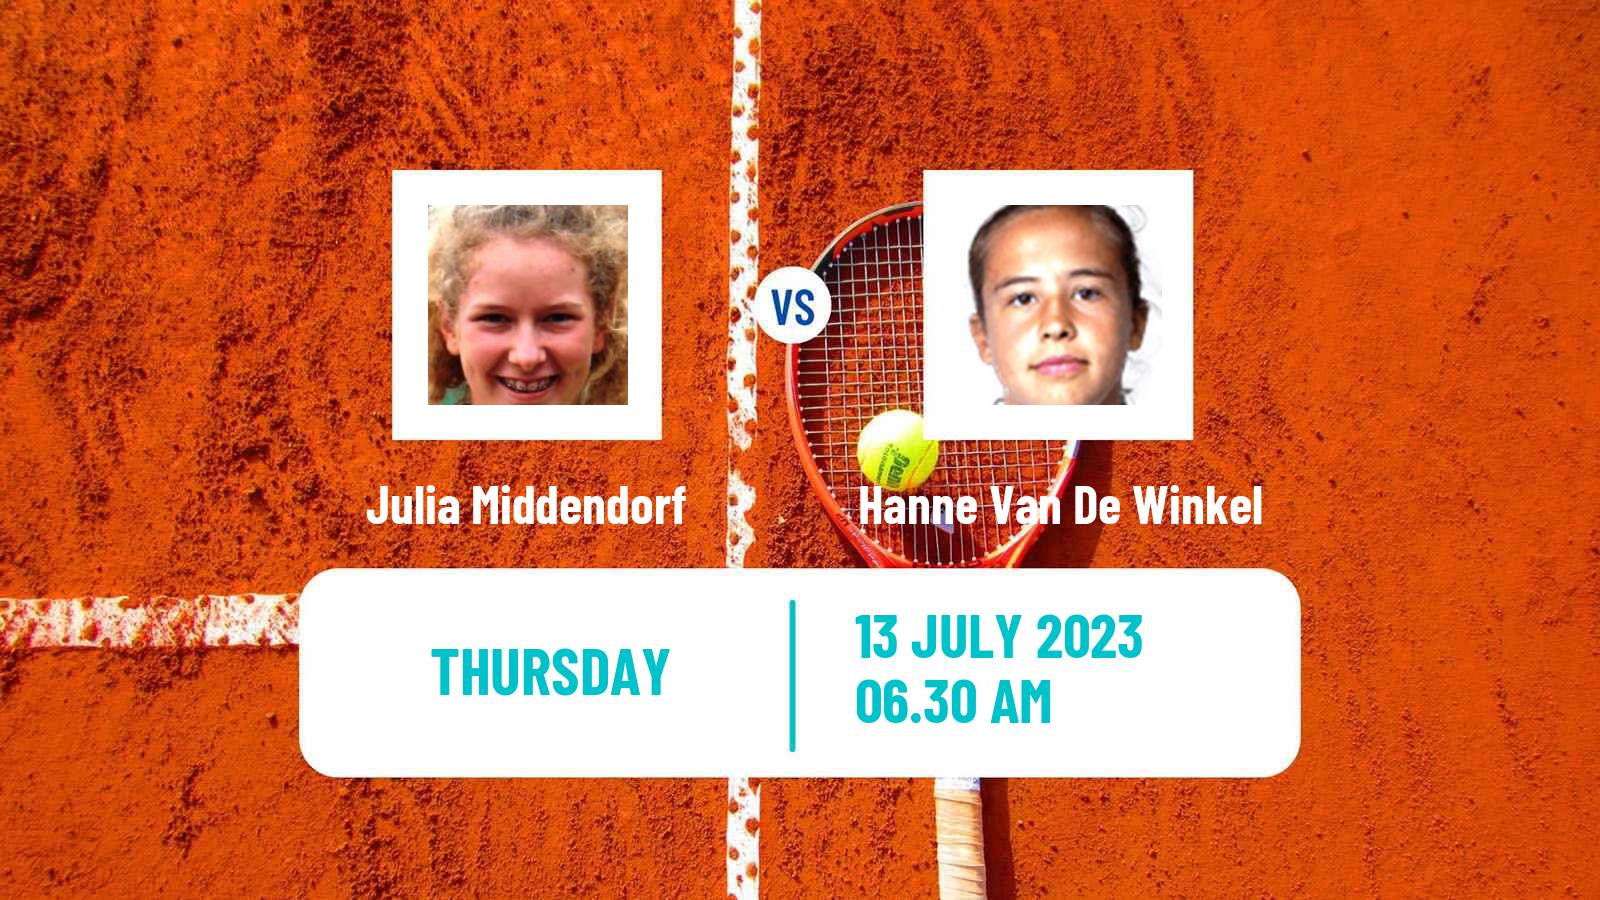 Tennis ITF W25 Aschaffenburg Women Julia Middendorf - Hanne Van De Winkel